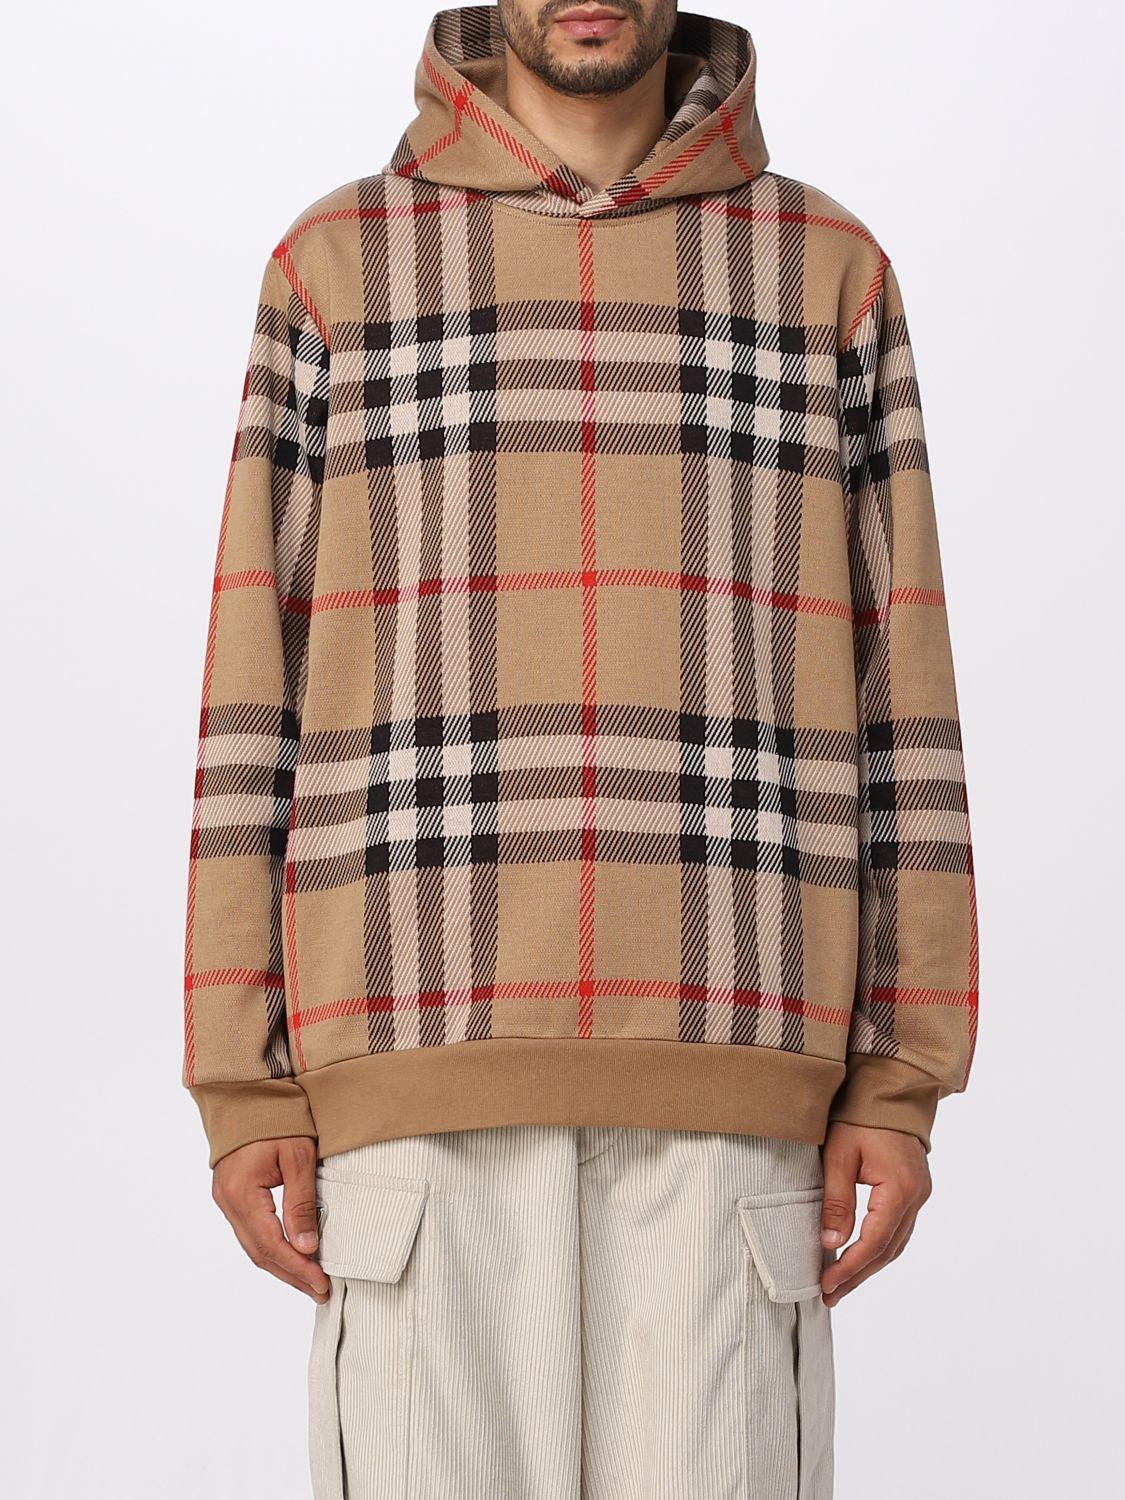 Samuel Cotton Blend Sweatshirt in Brown - Burberry